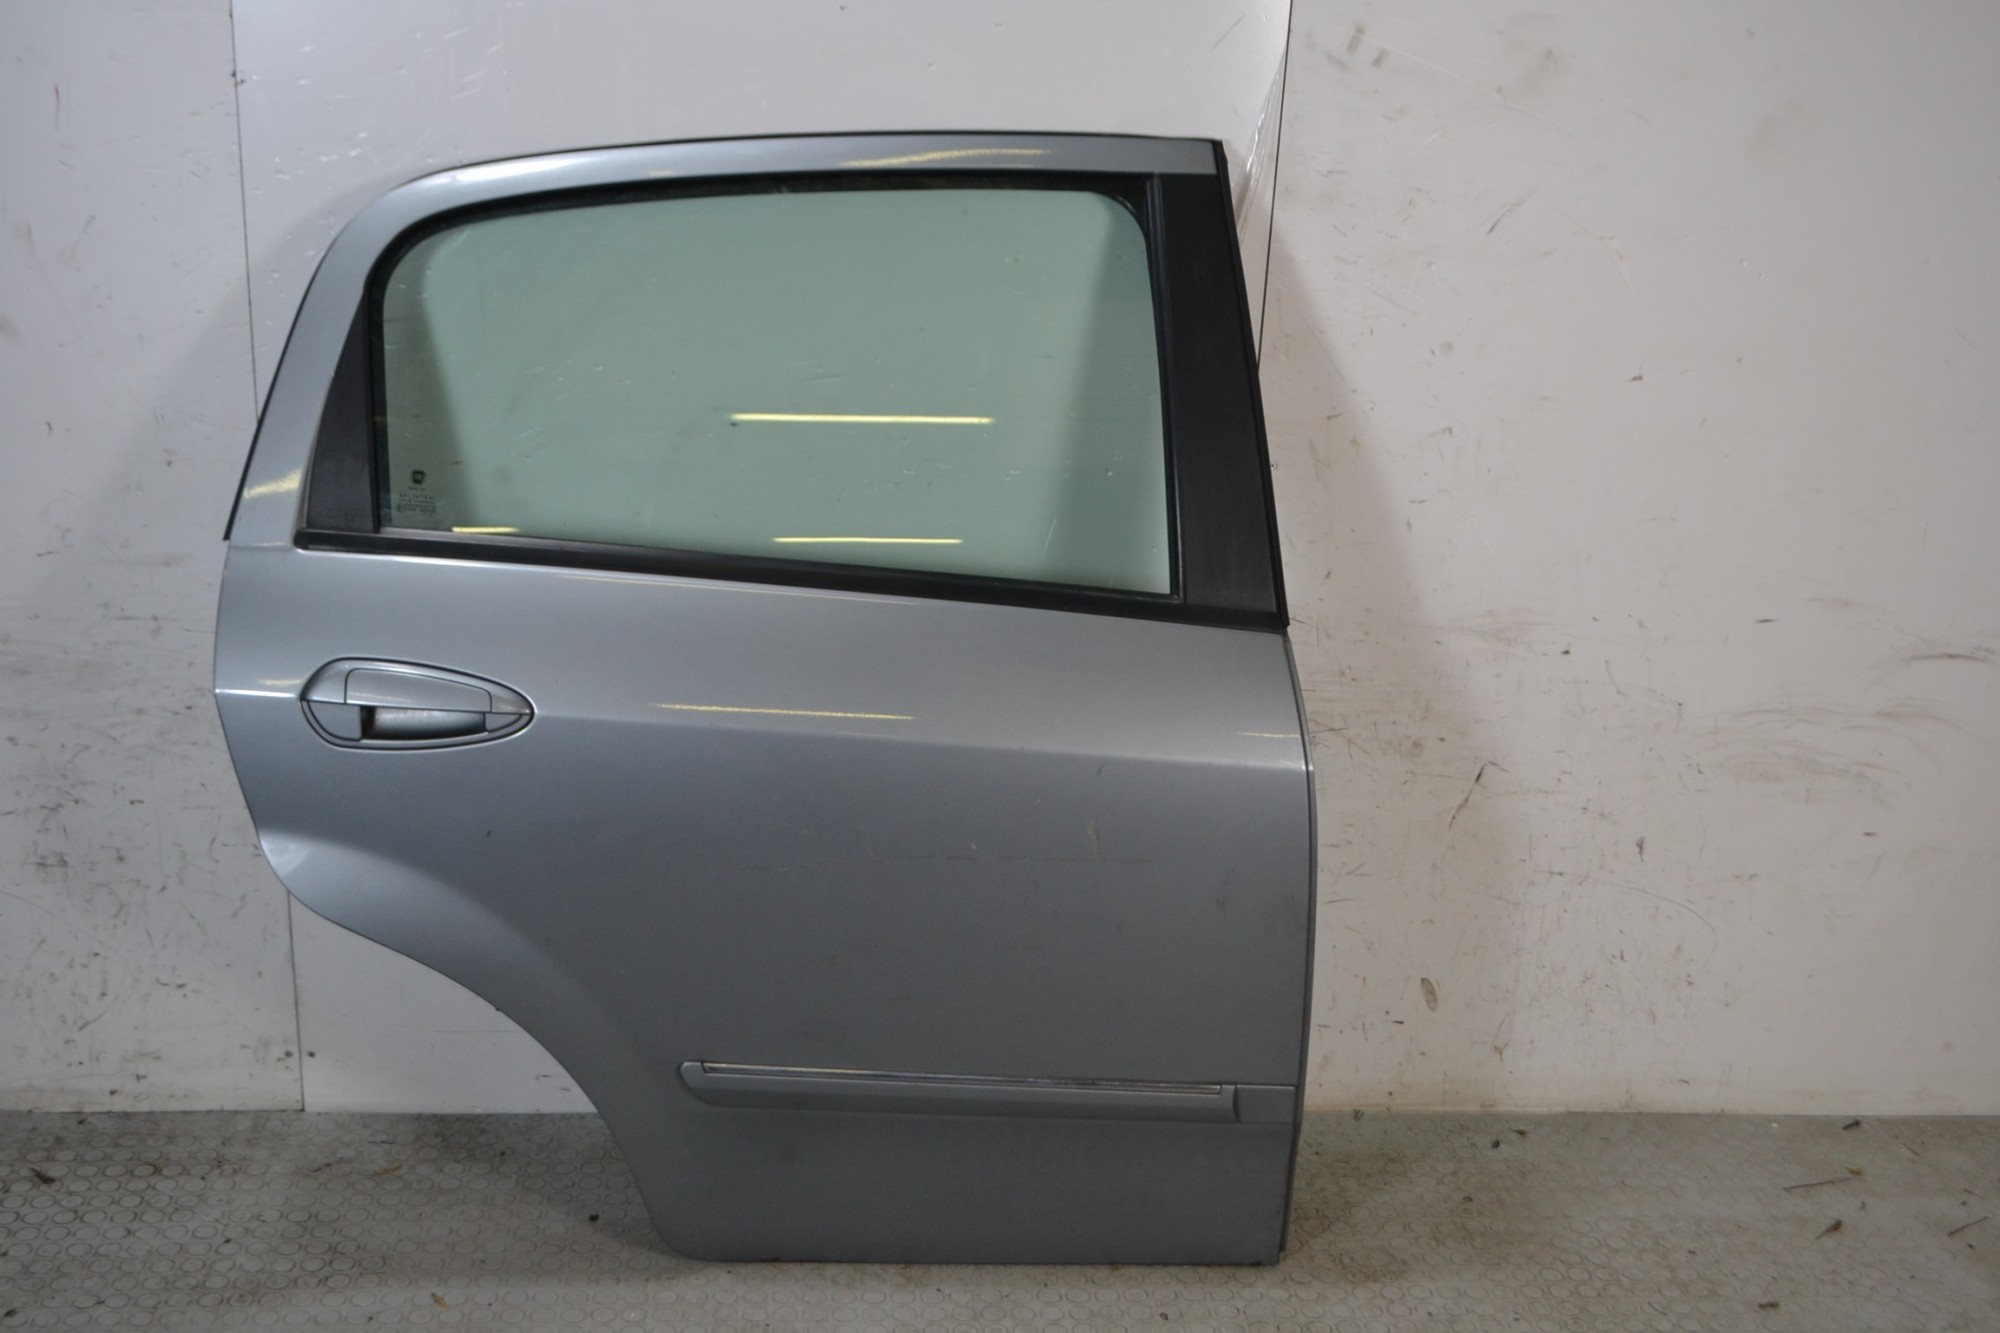 Portiera sportello posteriore DX Fiat punto EVO Dal 2009 al 2012 Colore grigio  1674128701669